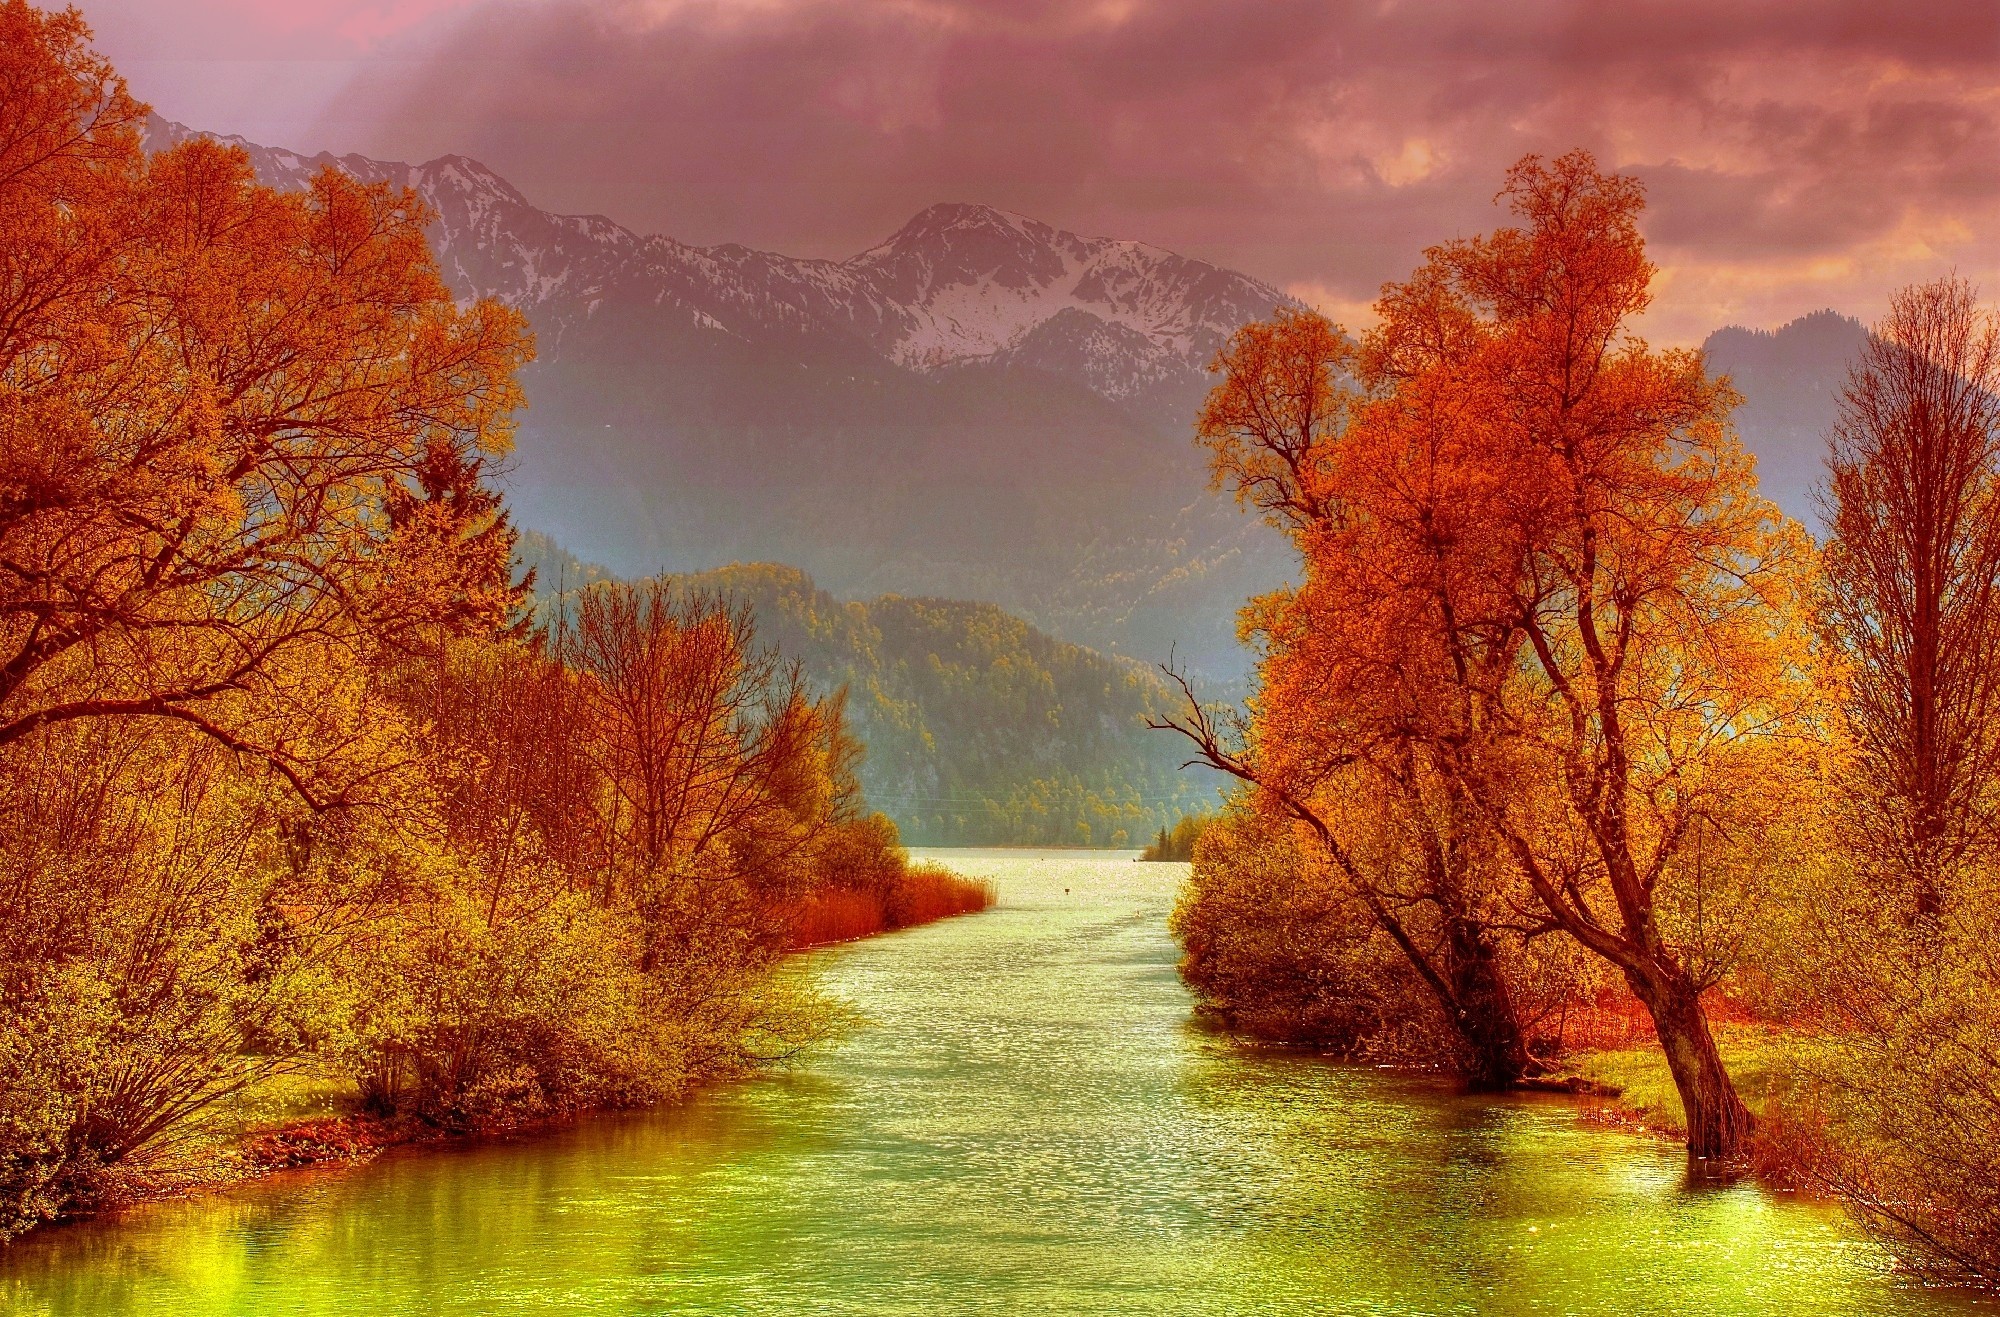 Скачать обои бесплатно Река, Осень, Облака, Гора, Дерево, Земля/природа картинка на рабочий стол ПК